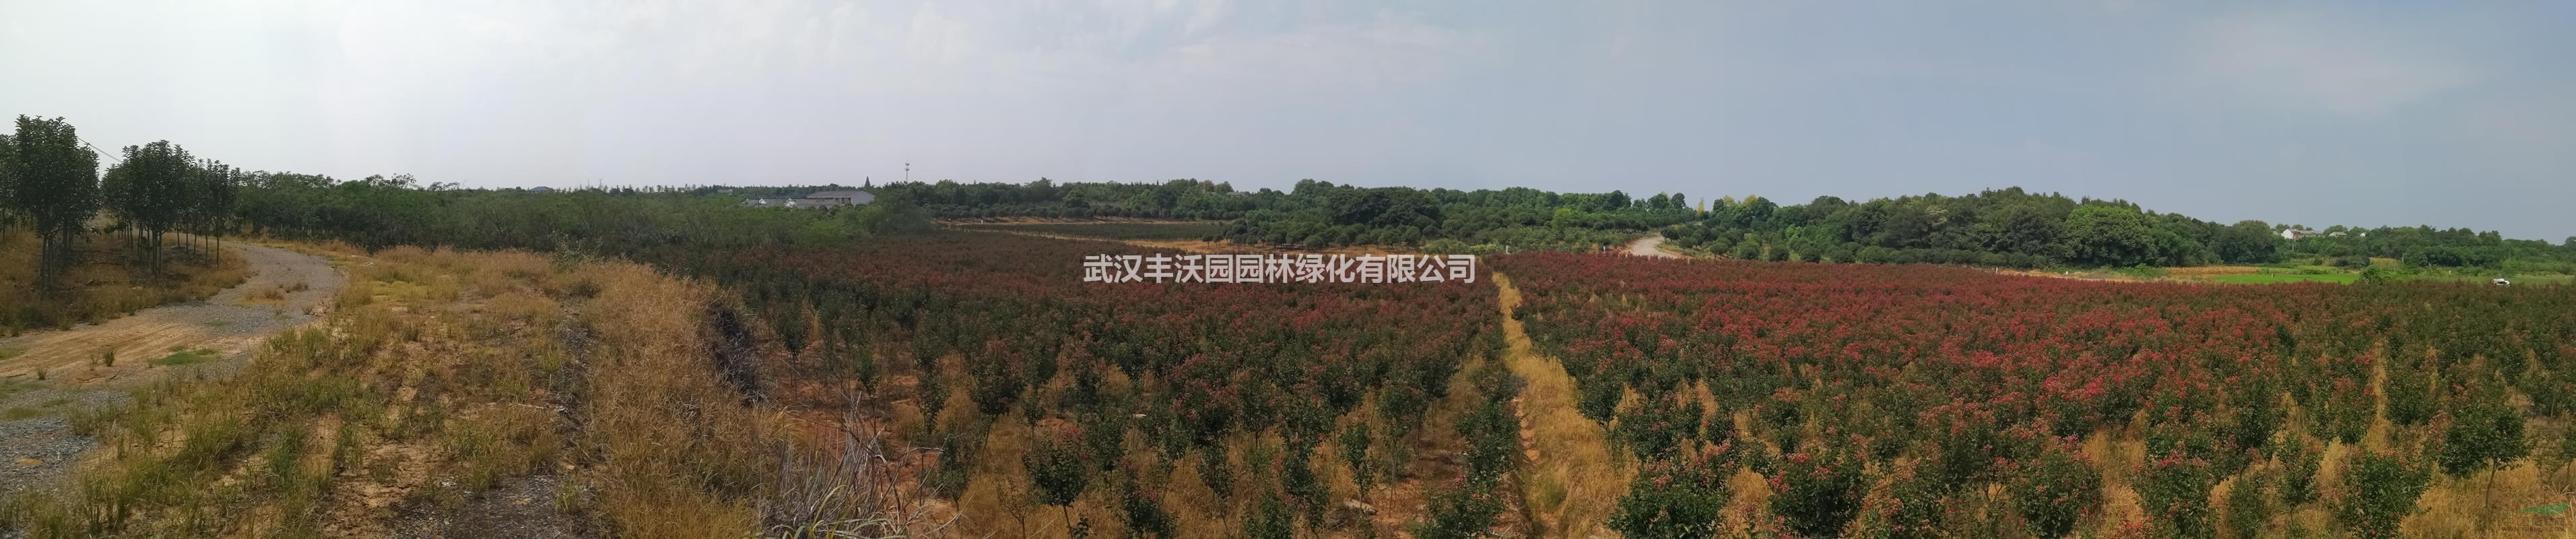 武汉丰沃园园林绿化有限公司苗圃提供胸径2-3cm红花紫薇